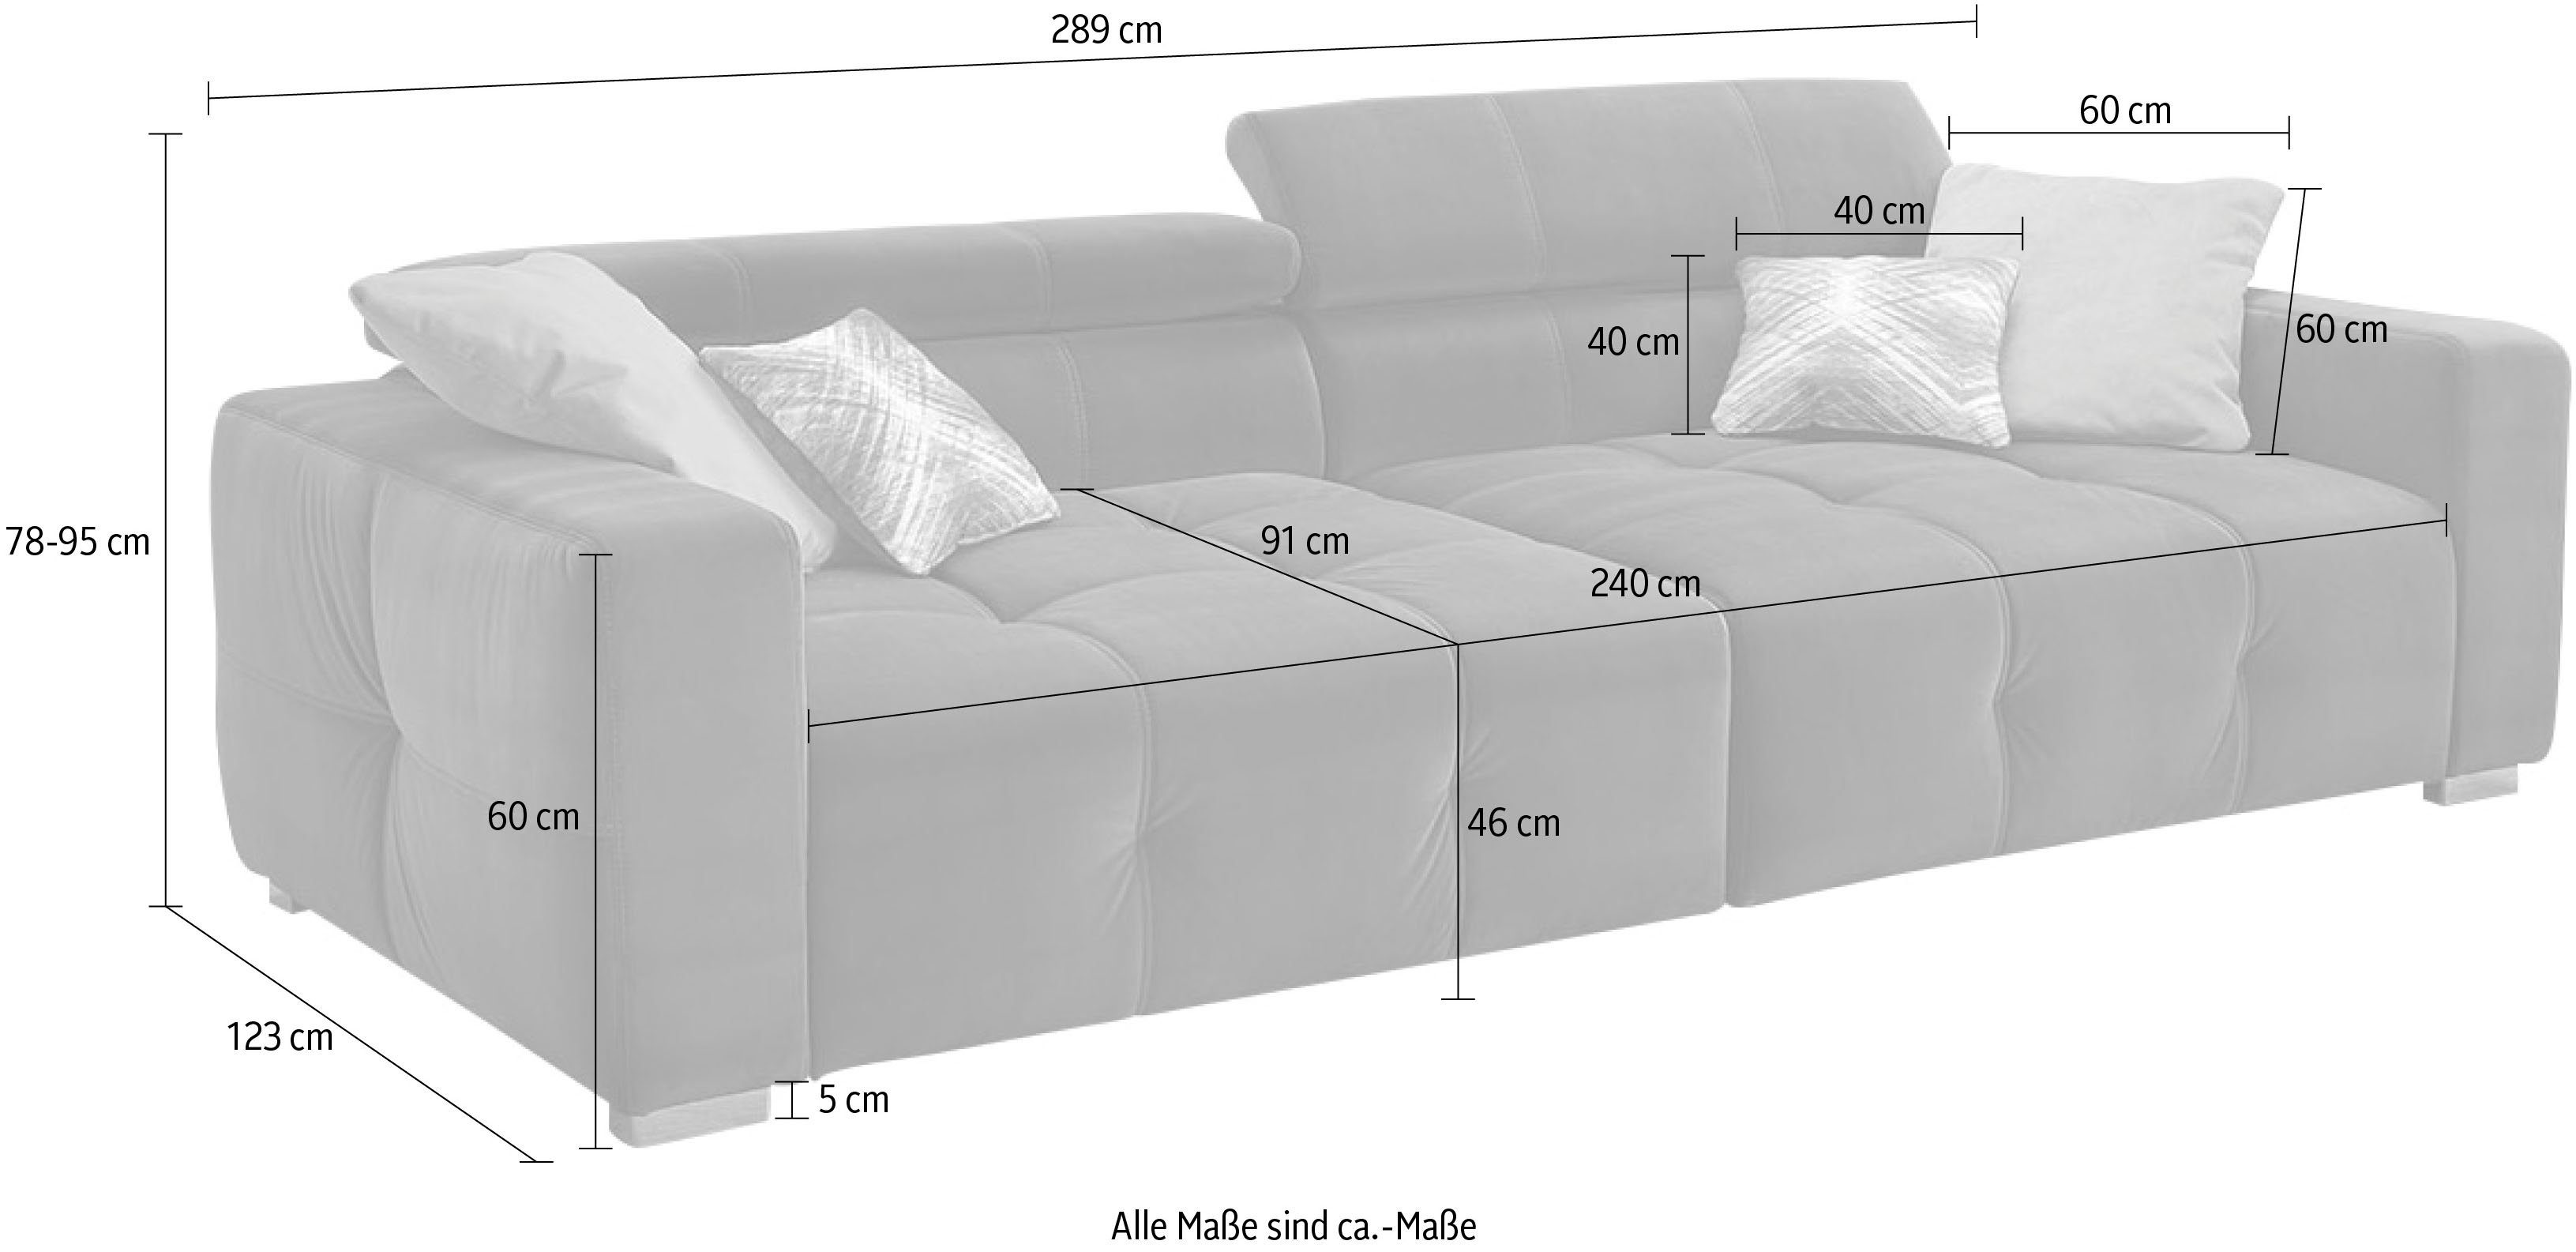 Jockenhöfer Gruppe Big-Sofa Trento, grau Kopfstützen Wellenfederung, verstellbare Sitzkomfort mehrfach mit und